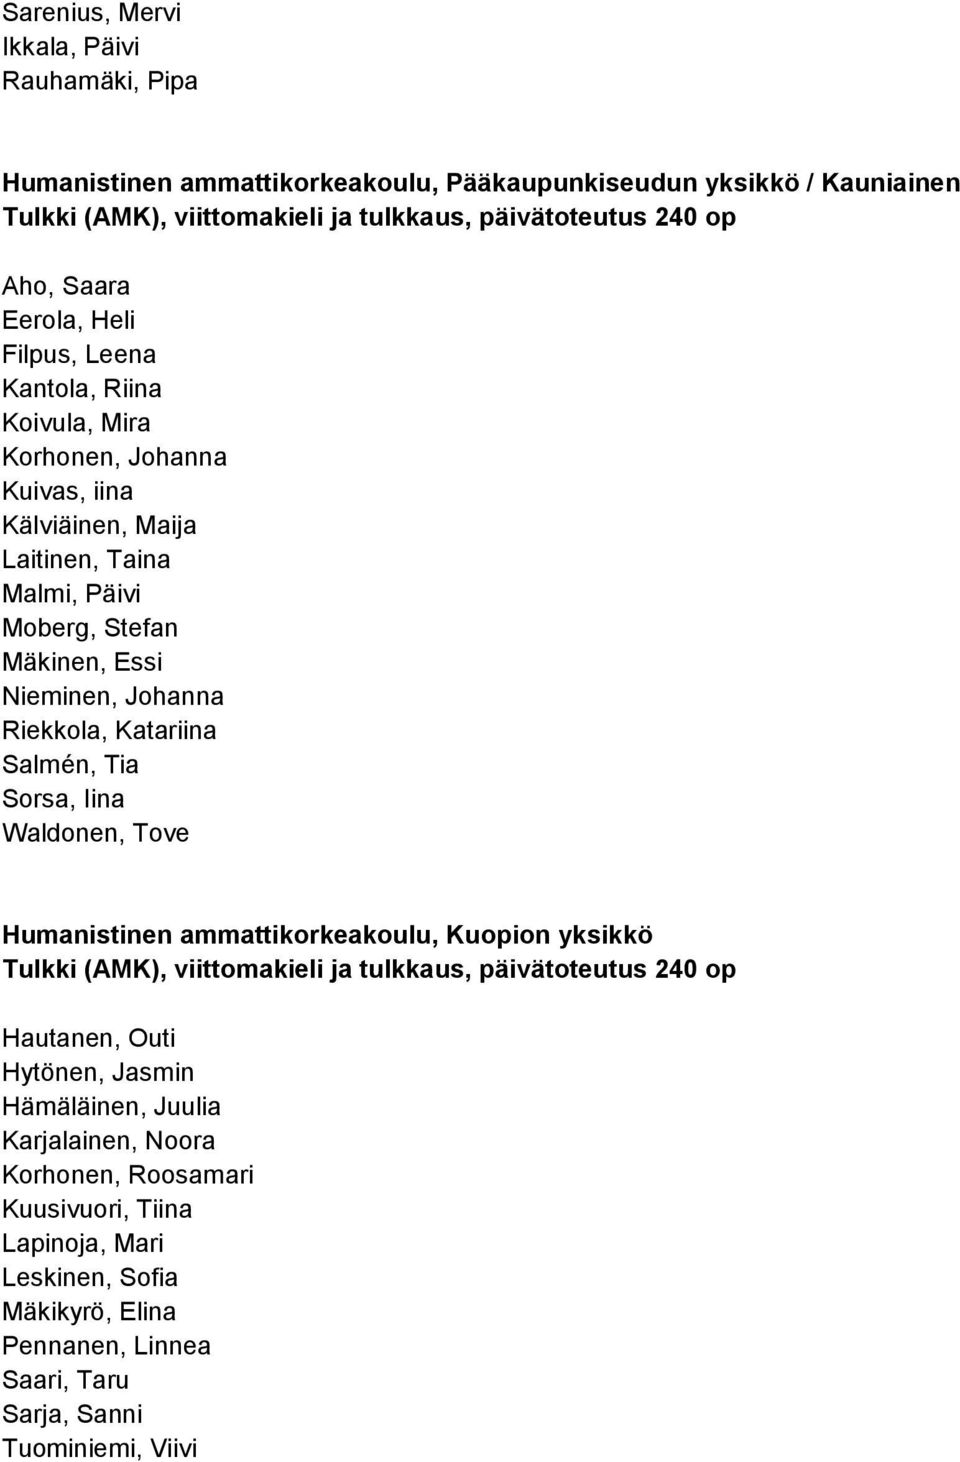 Riekkola, Katariina Salmén, Tia Sorsa, Iina Waldonen, Tove Humanistinen ammattikorkeakoulu, Kuopion yksikkö Tulkki (AMK), viittomakieli ja tulkkaus, päivätoteutus 240 op Hautanen, Outi